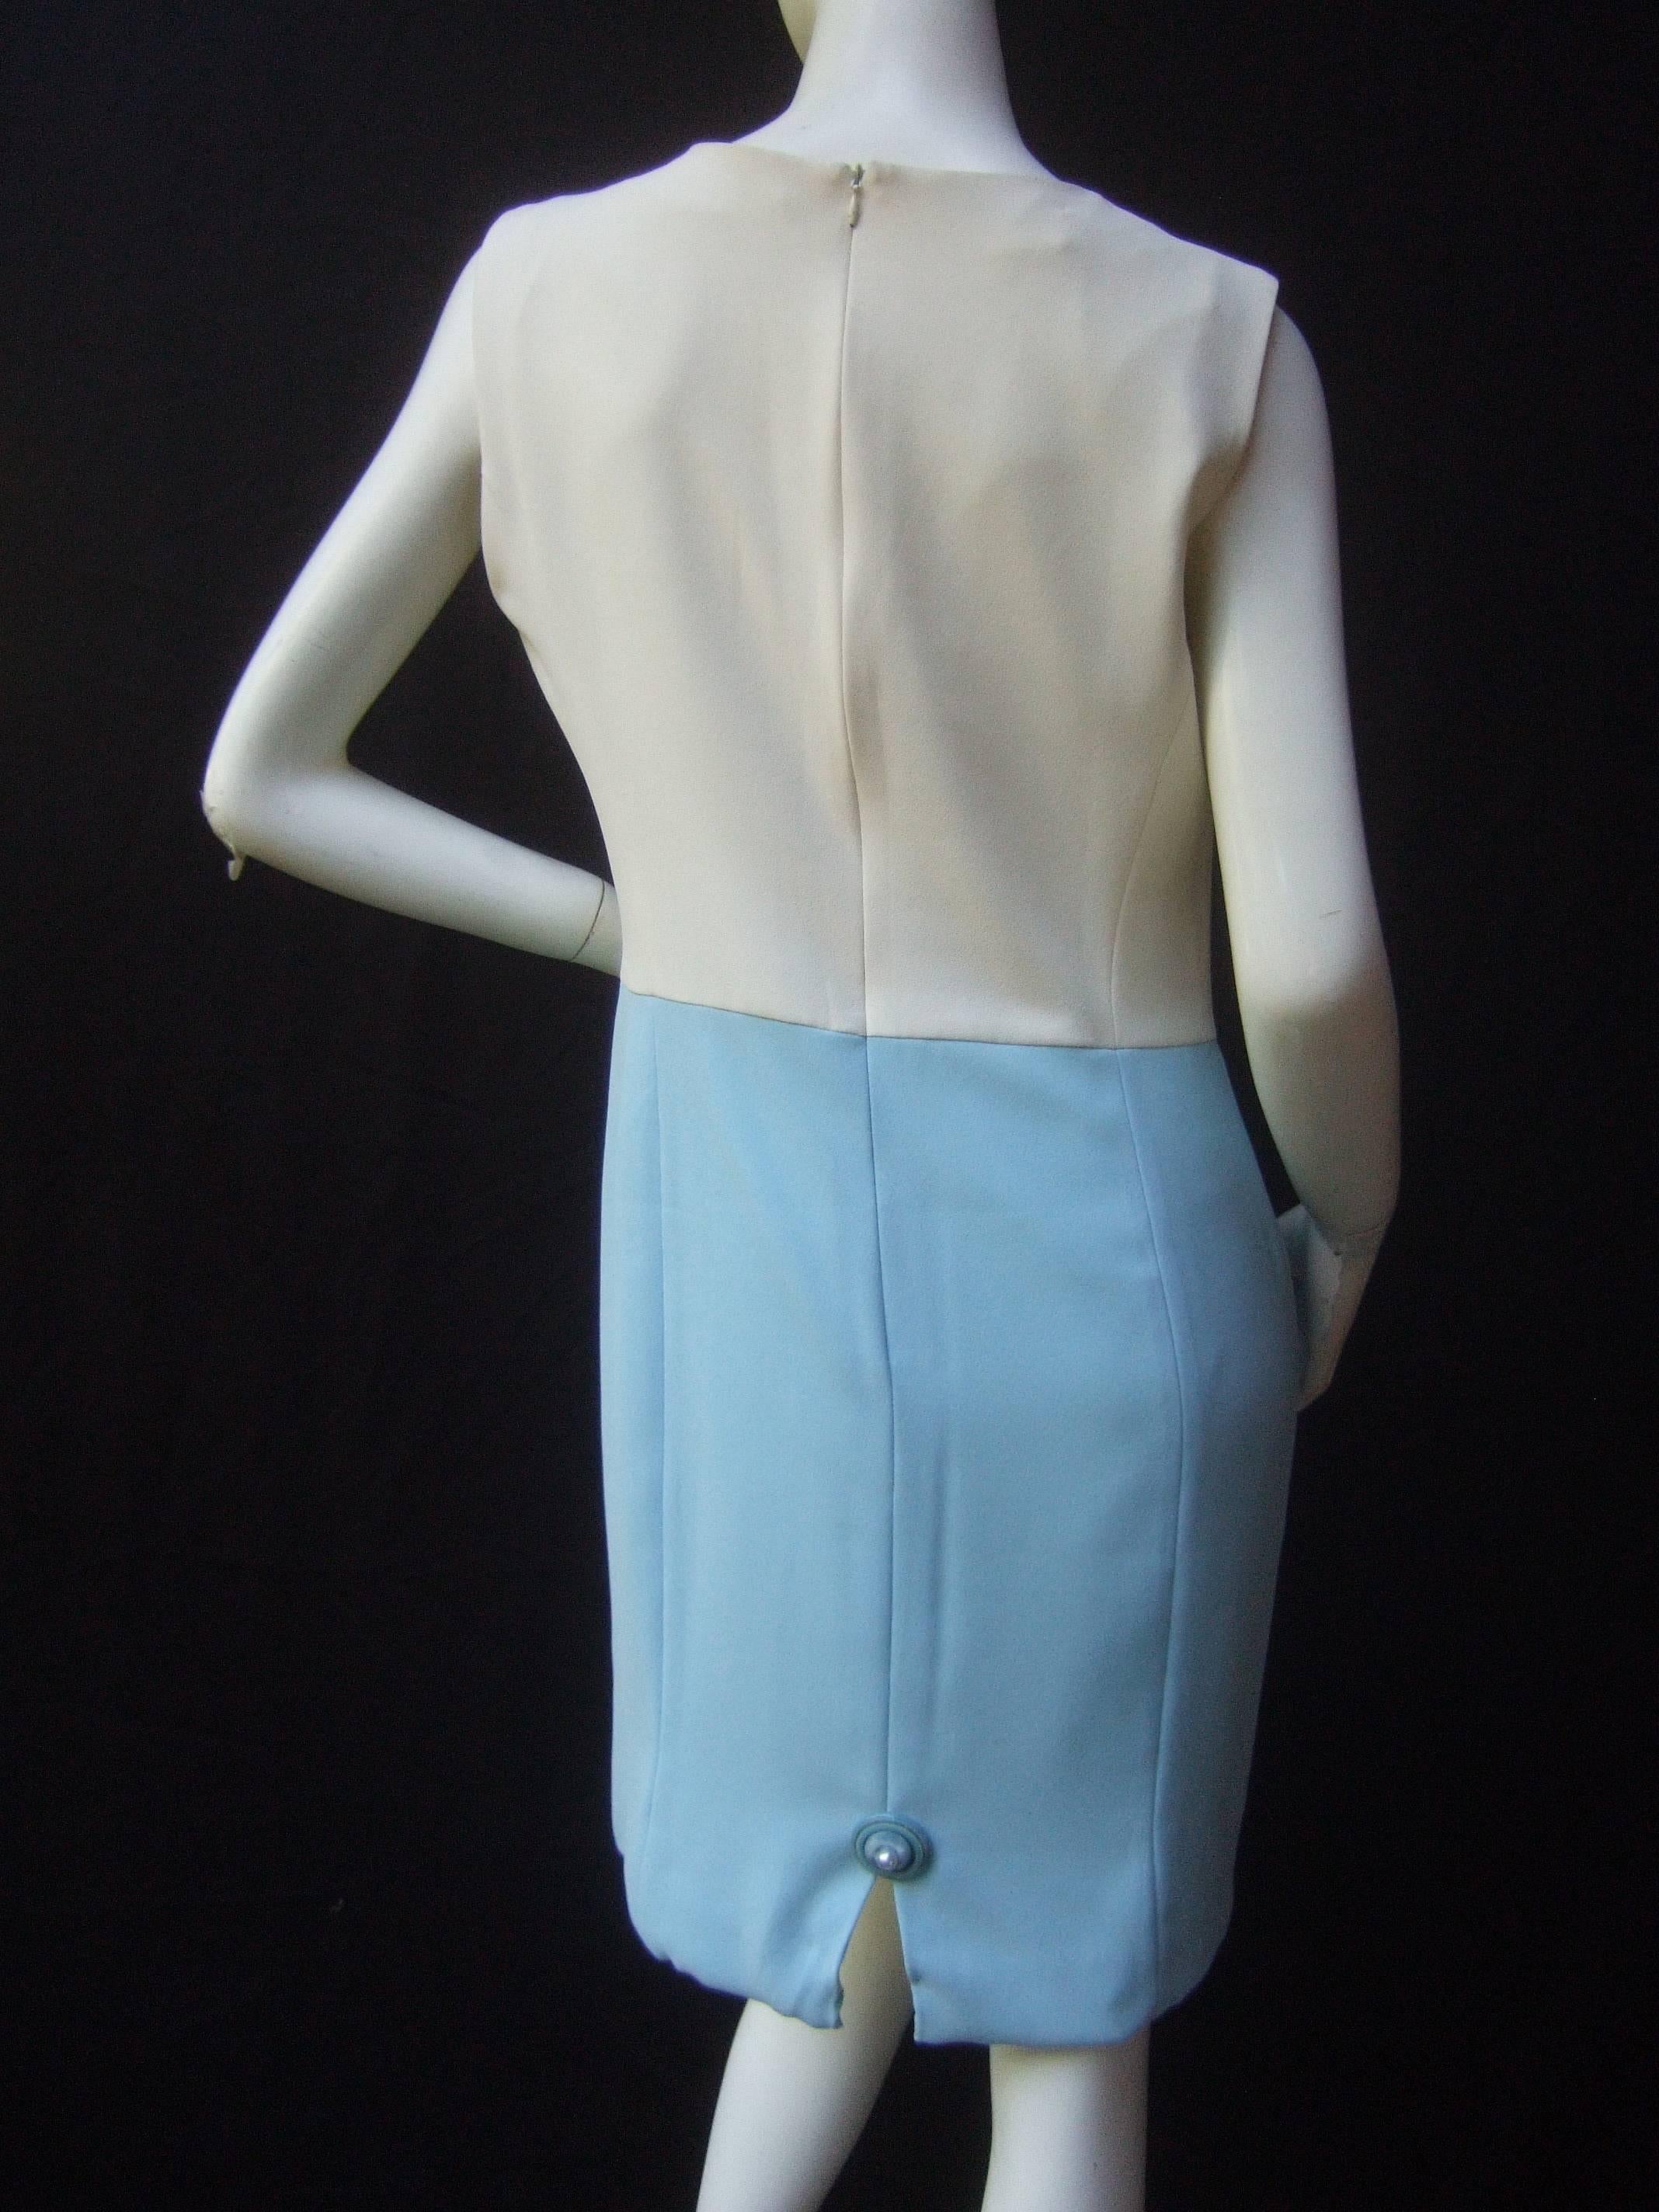 Women's Pierre Cardin Mod White & Turquoise Sheath Dress c 1970